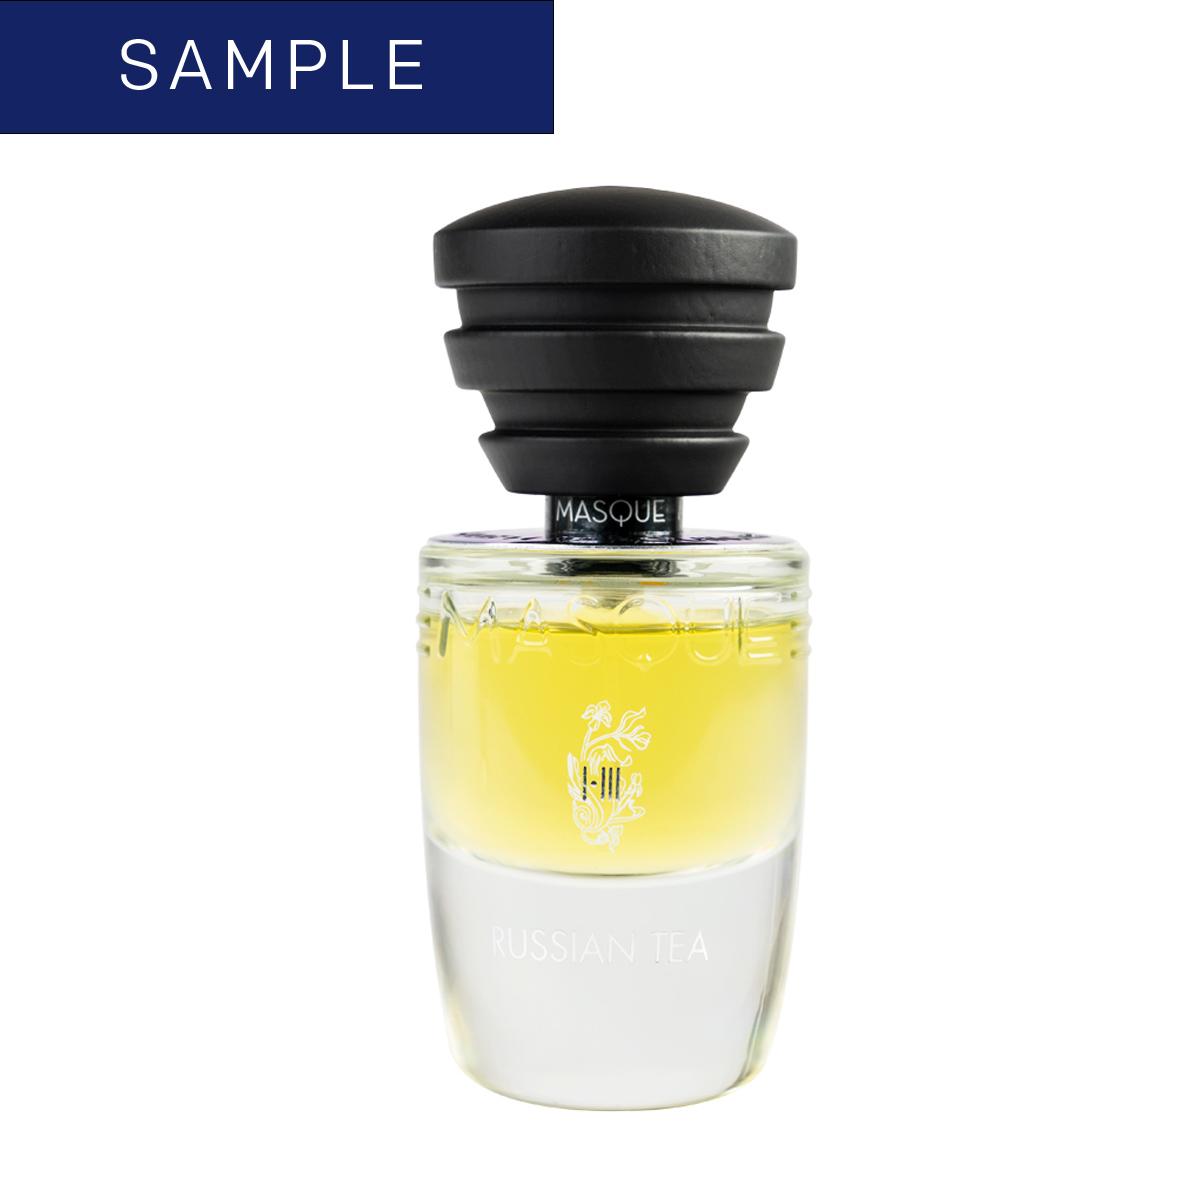 Primary image of Sample - Russian Tea Eau De Parfum